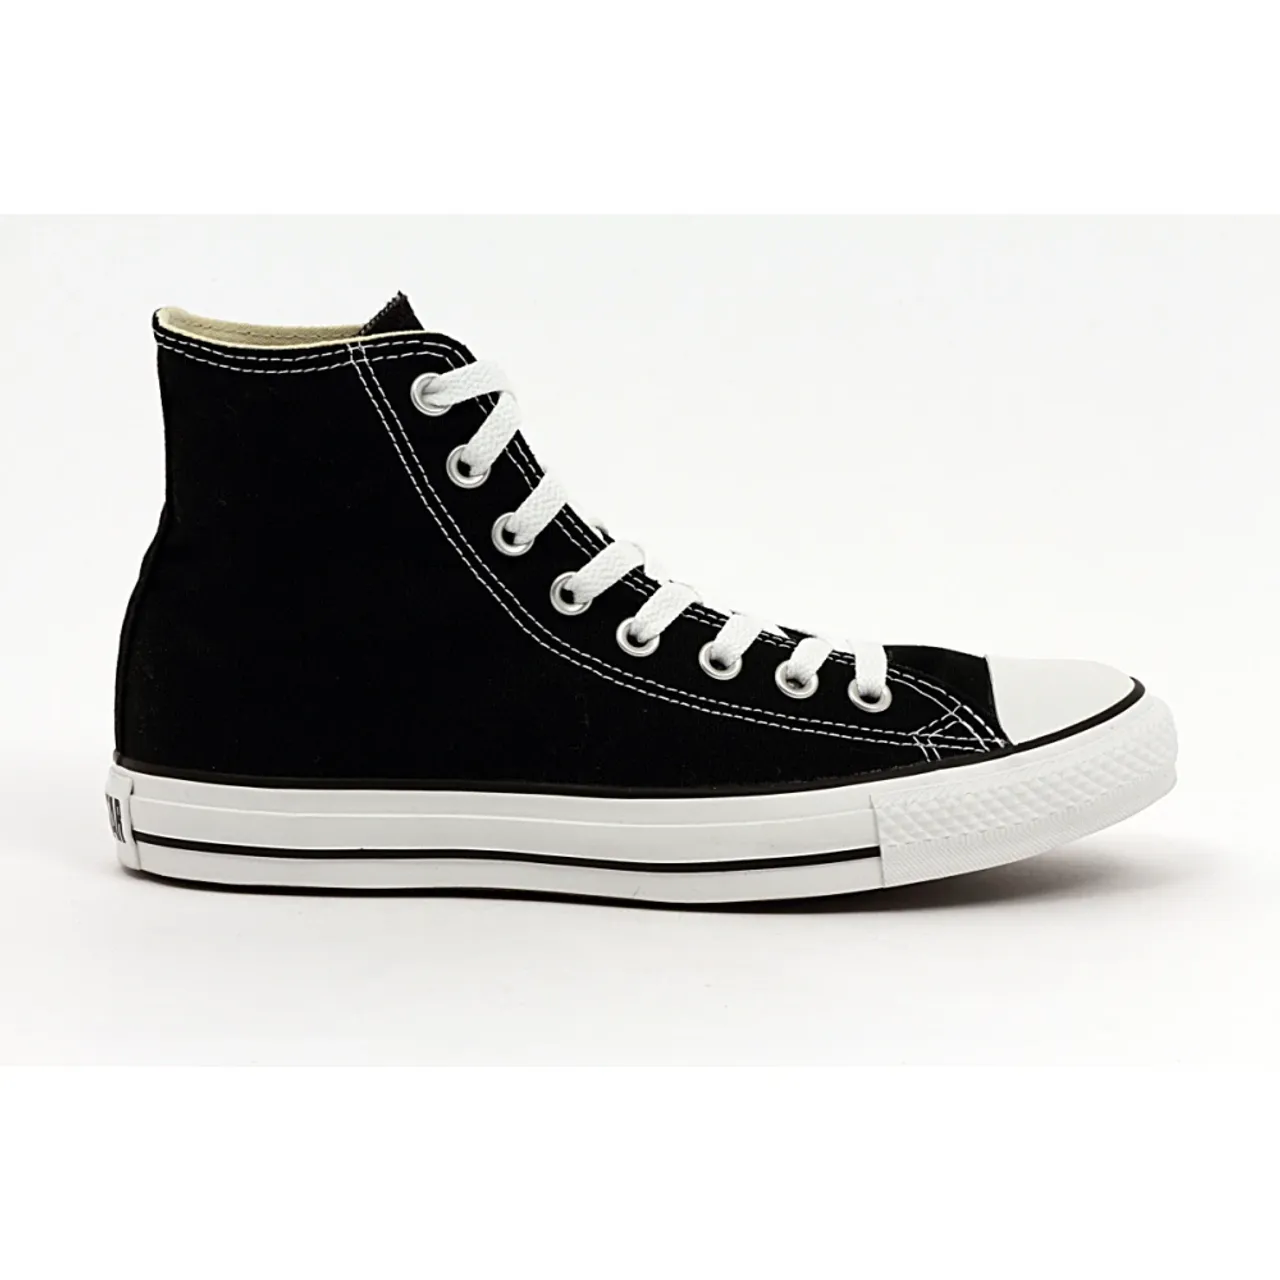 Converse , Sneakers MIINTO-b8af806ae40719692ede ,Black unisex, Sizes: 5 1/2 UK, 4 UK, 2 1/2 UK, 3 1/2 UK, 6 UK, 11 UK, 3 UK, 7 UK, 7 1/2 UK, 9 UK, 2 U